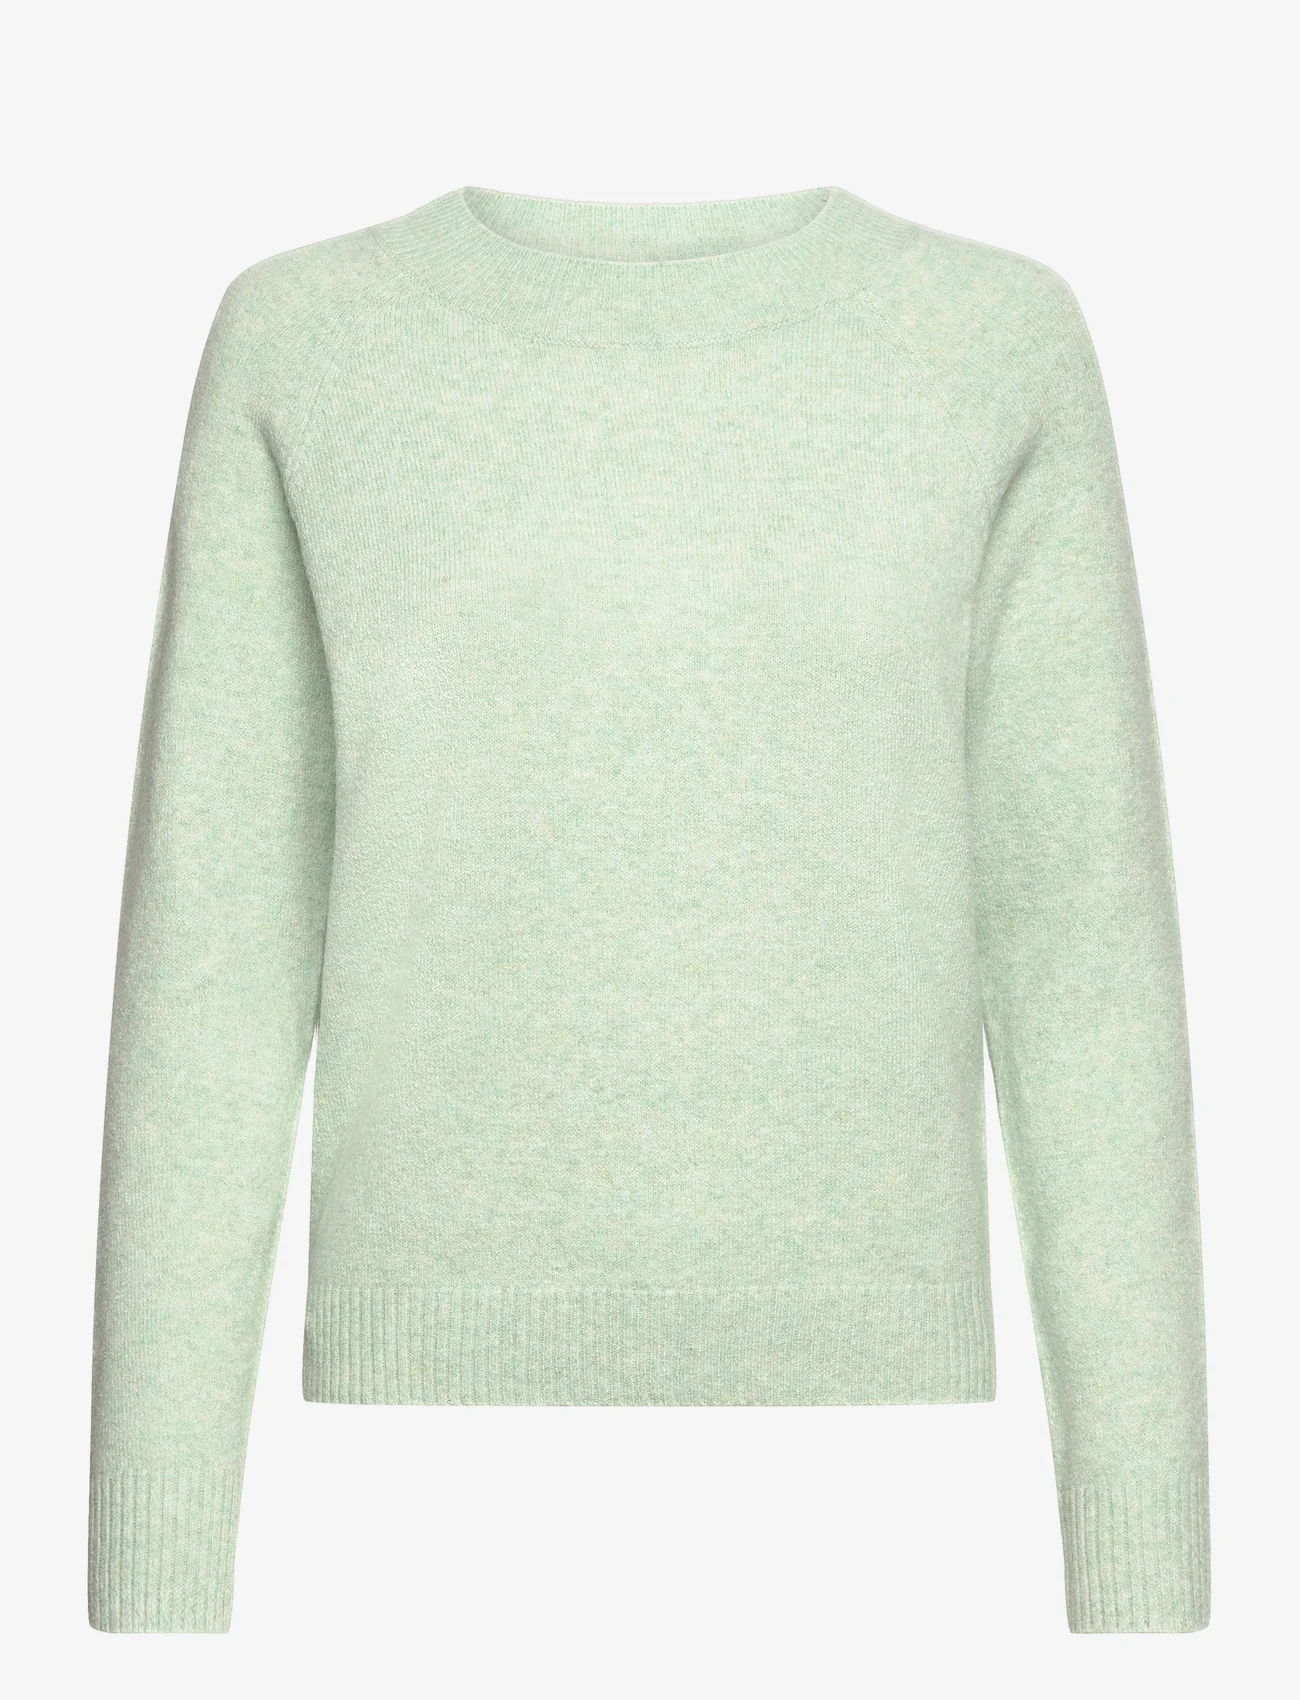 Vero Moda - VMDOFFY LS O-NECK BLOUSE GA NOOS - sweaters - silt green - 0